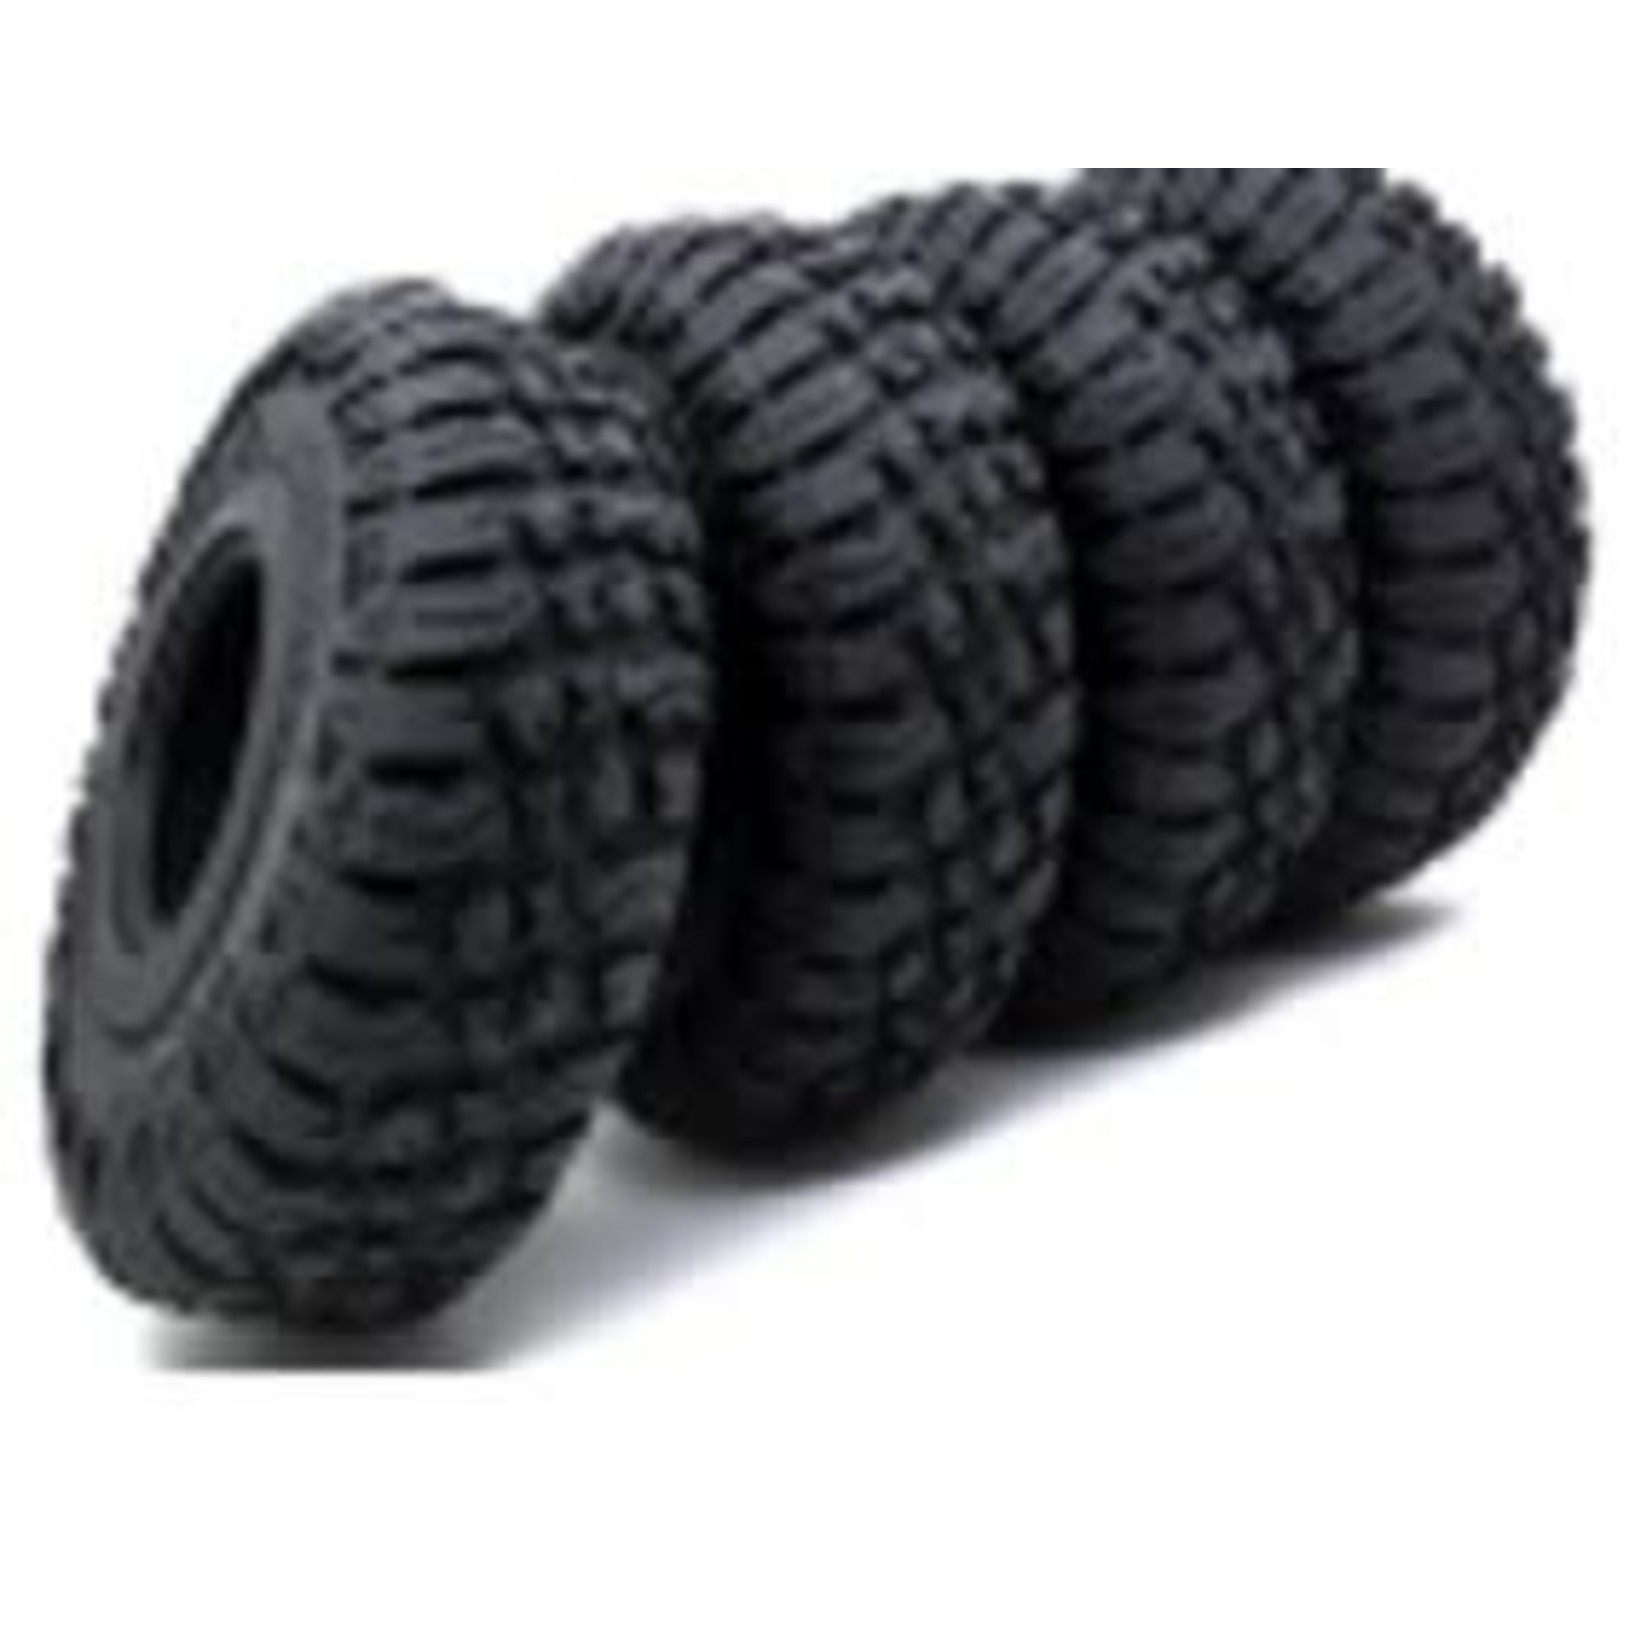 AZTAB AZTAB 1.9 Aggressive X Rock Crawling Tires 118MM